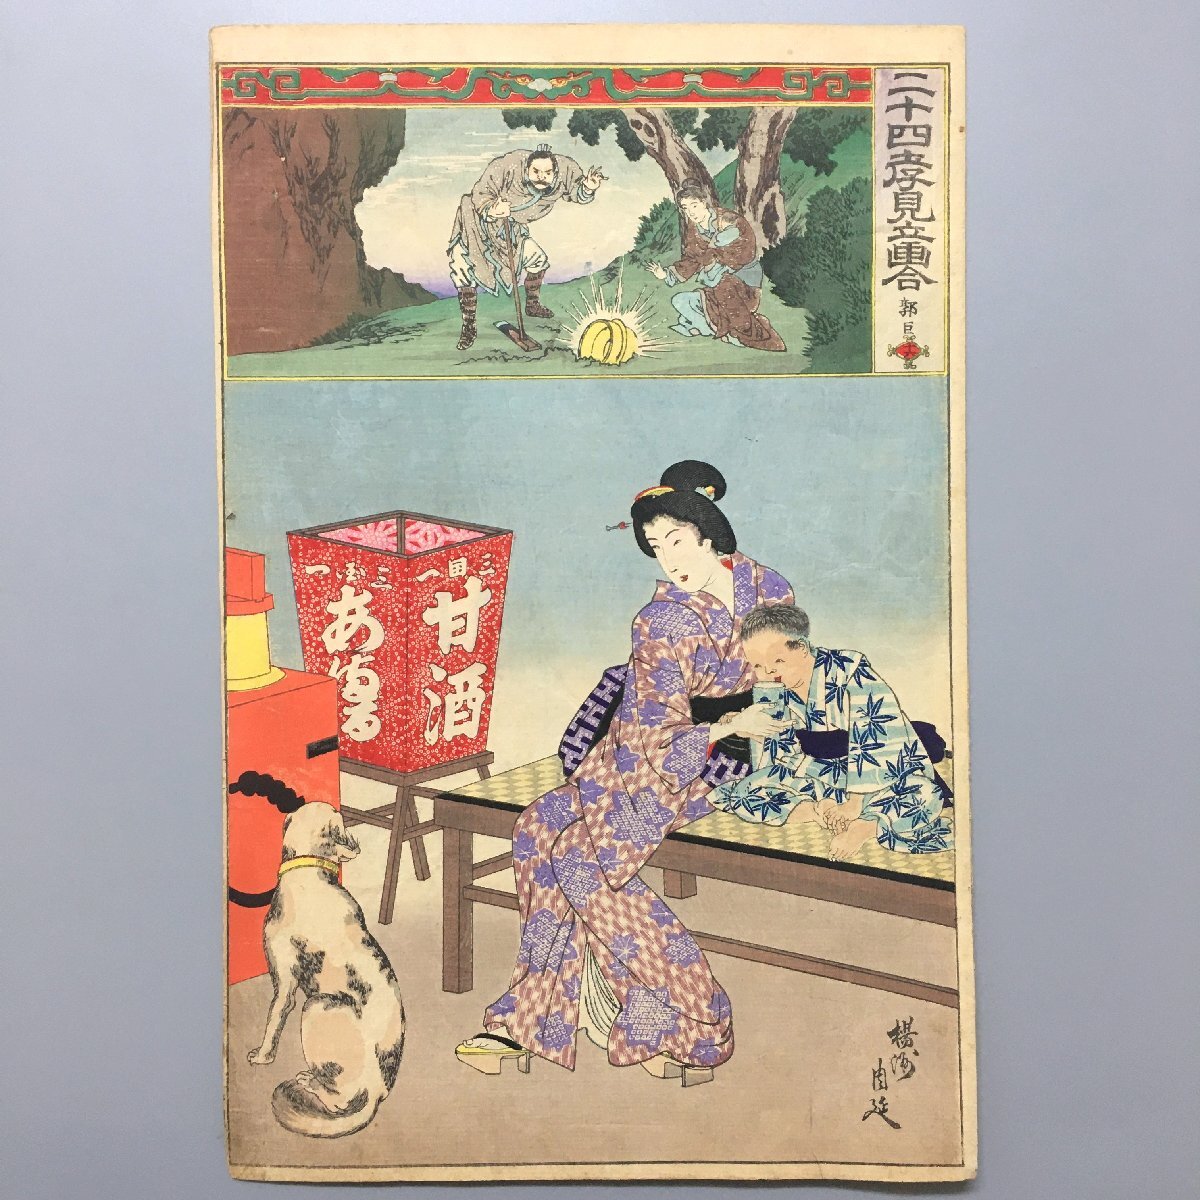 Veinticuatro pinturas de pie de Takami, Decimoctavo Qianlu Yangshu Shunobu, Meiji 23, nishiki-e, ukiyo-e de gran formato, grabado en madera, perro, cuadro, Ukiyo-e, imprimir, Hermosa mujer pintando